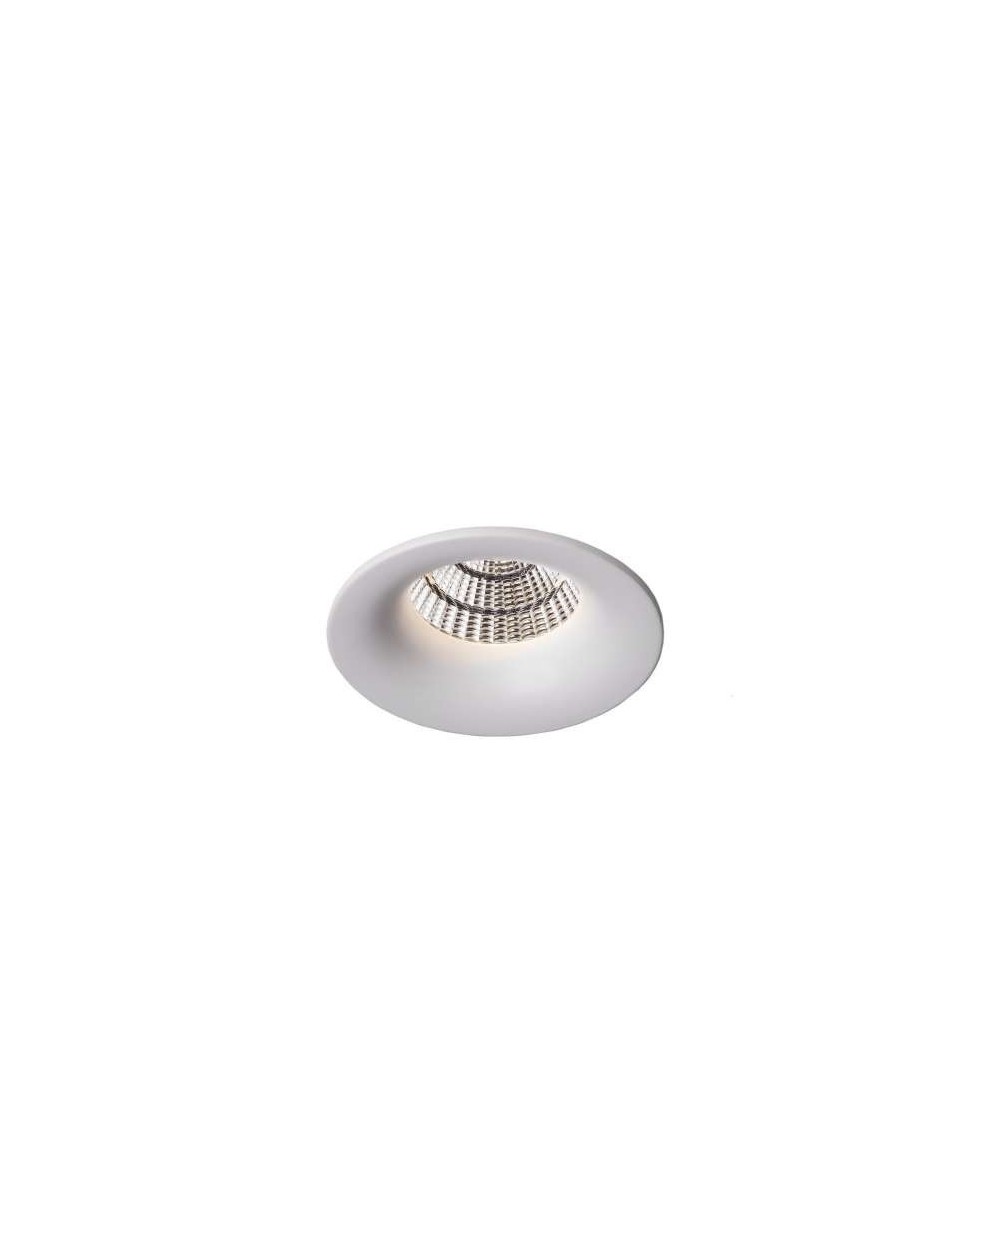 Lampa sufitowa EYELET WP LED DIM IP44 - Mistic Lighting oprawa wpuszczana okrągła typu downlight do zabudowy w sufitach biała